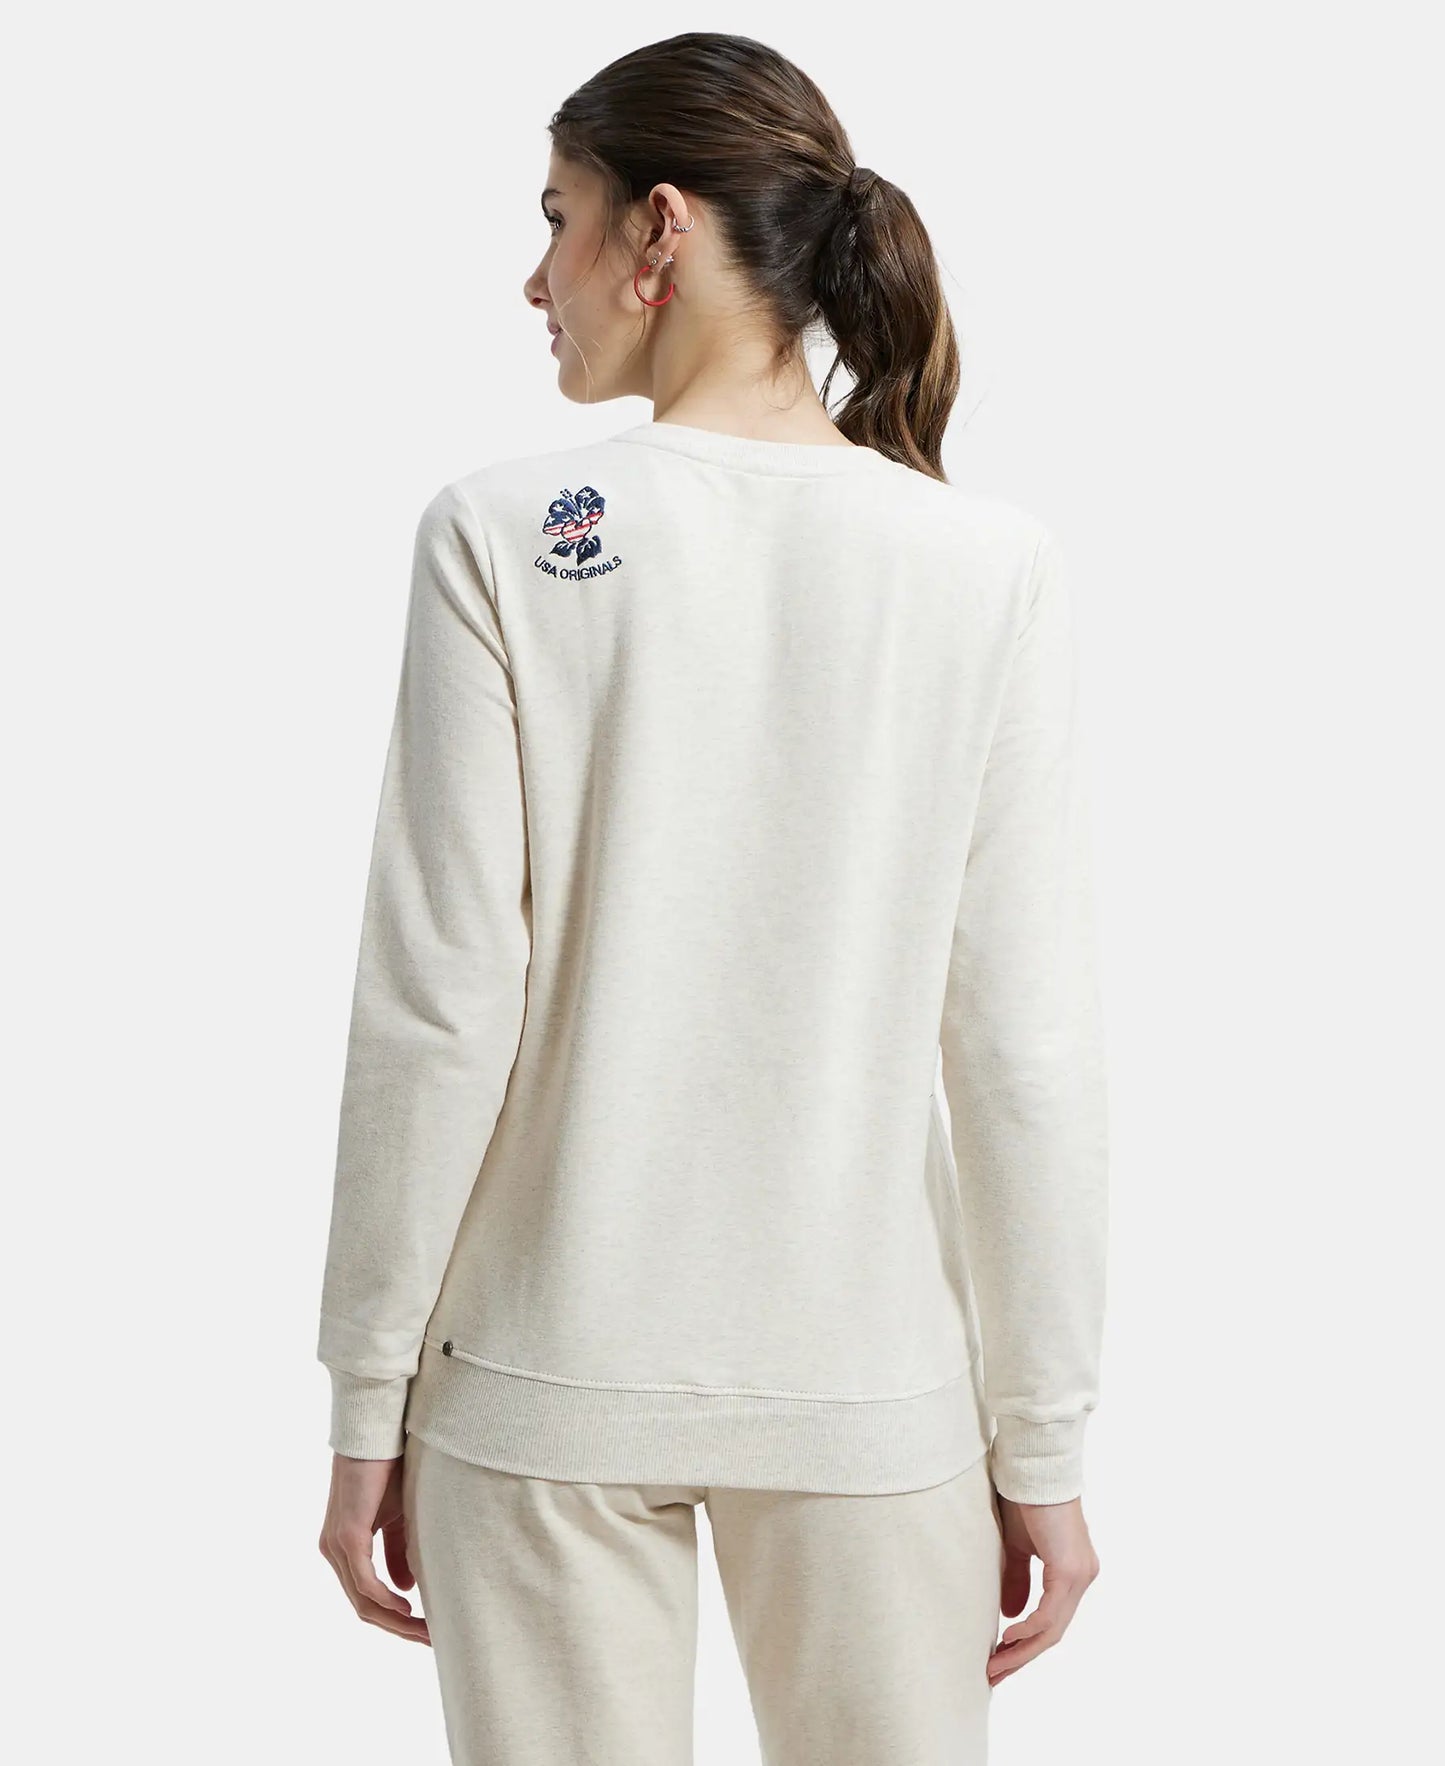 Super Combed Cotton Elastane Stretch Melange Sweatshirt with Round Neck Half Zip - Cream Melange-3